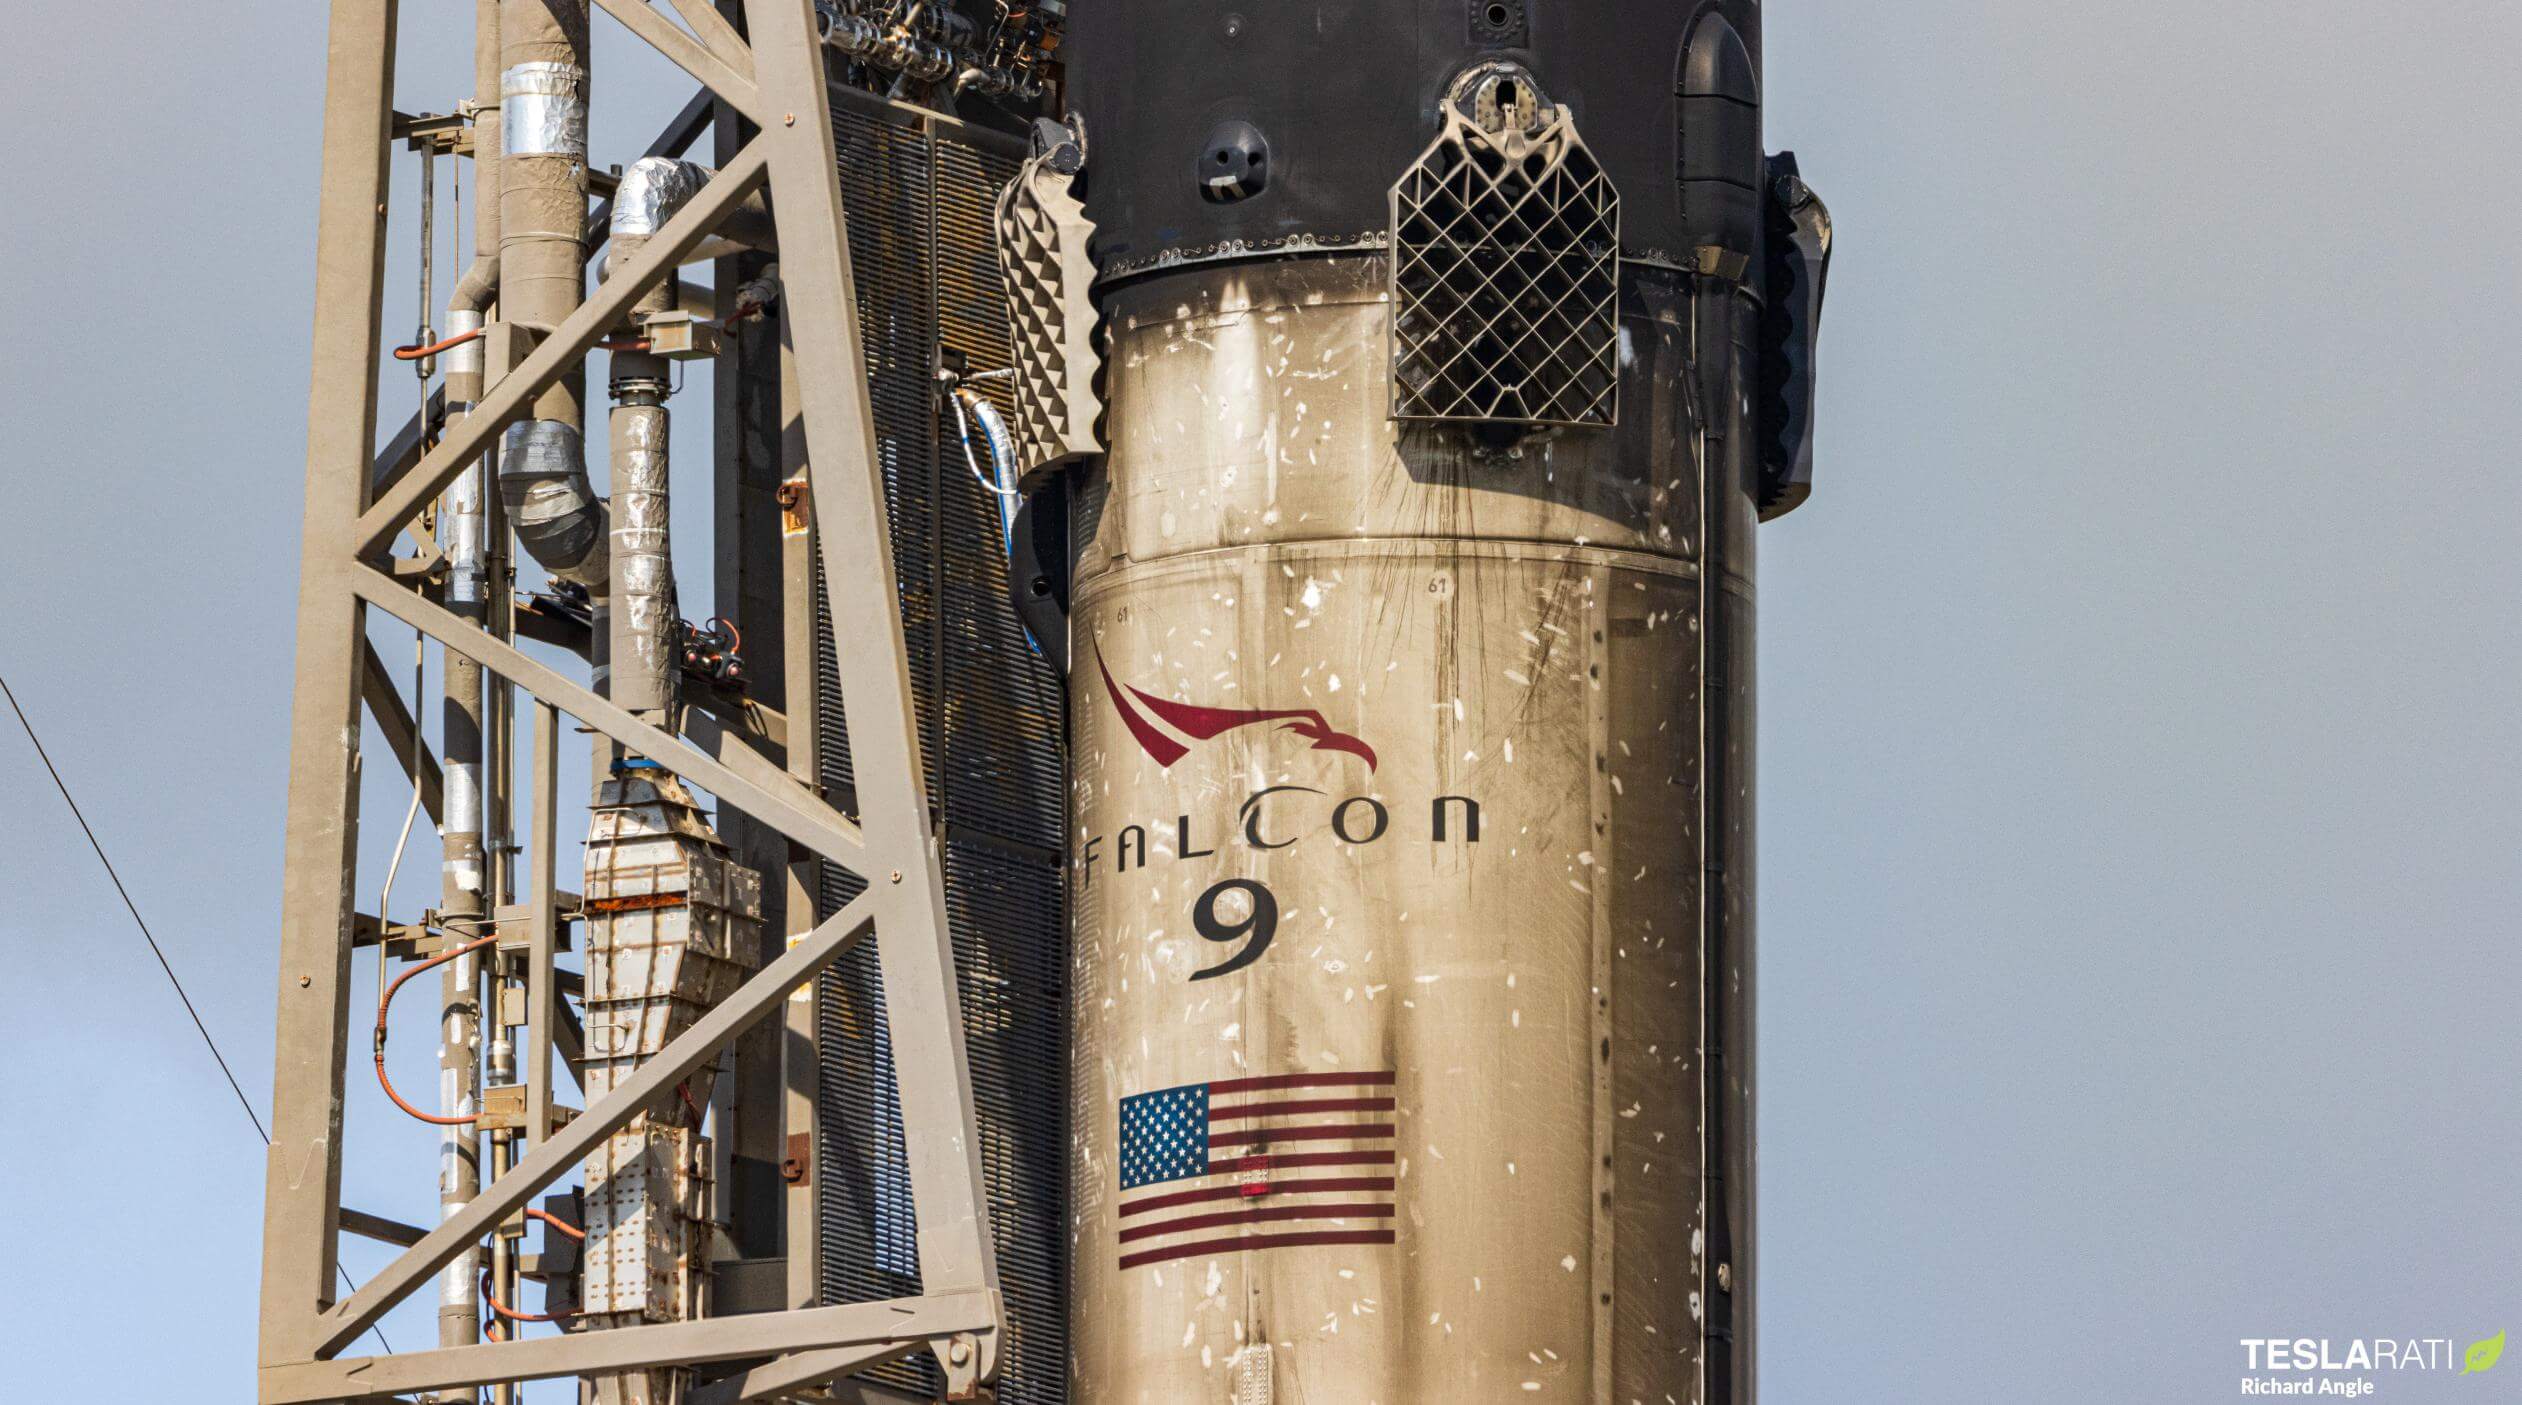 سبيس إكس يؤجل إطلاق Falcon 9 الثاني إلى أجل غير مسمى في غضون أسبوعين